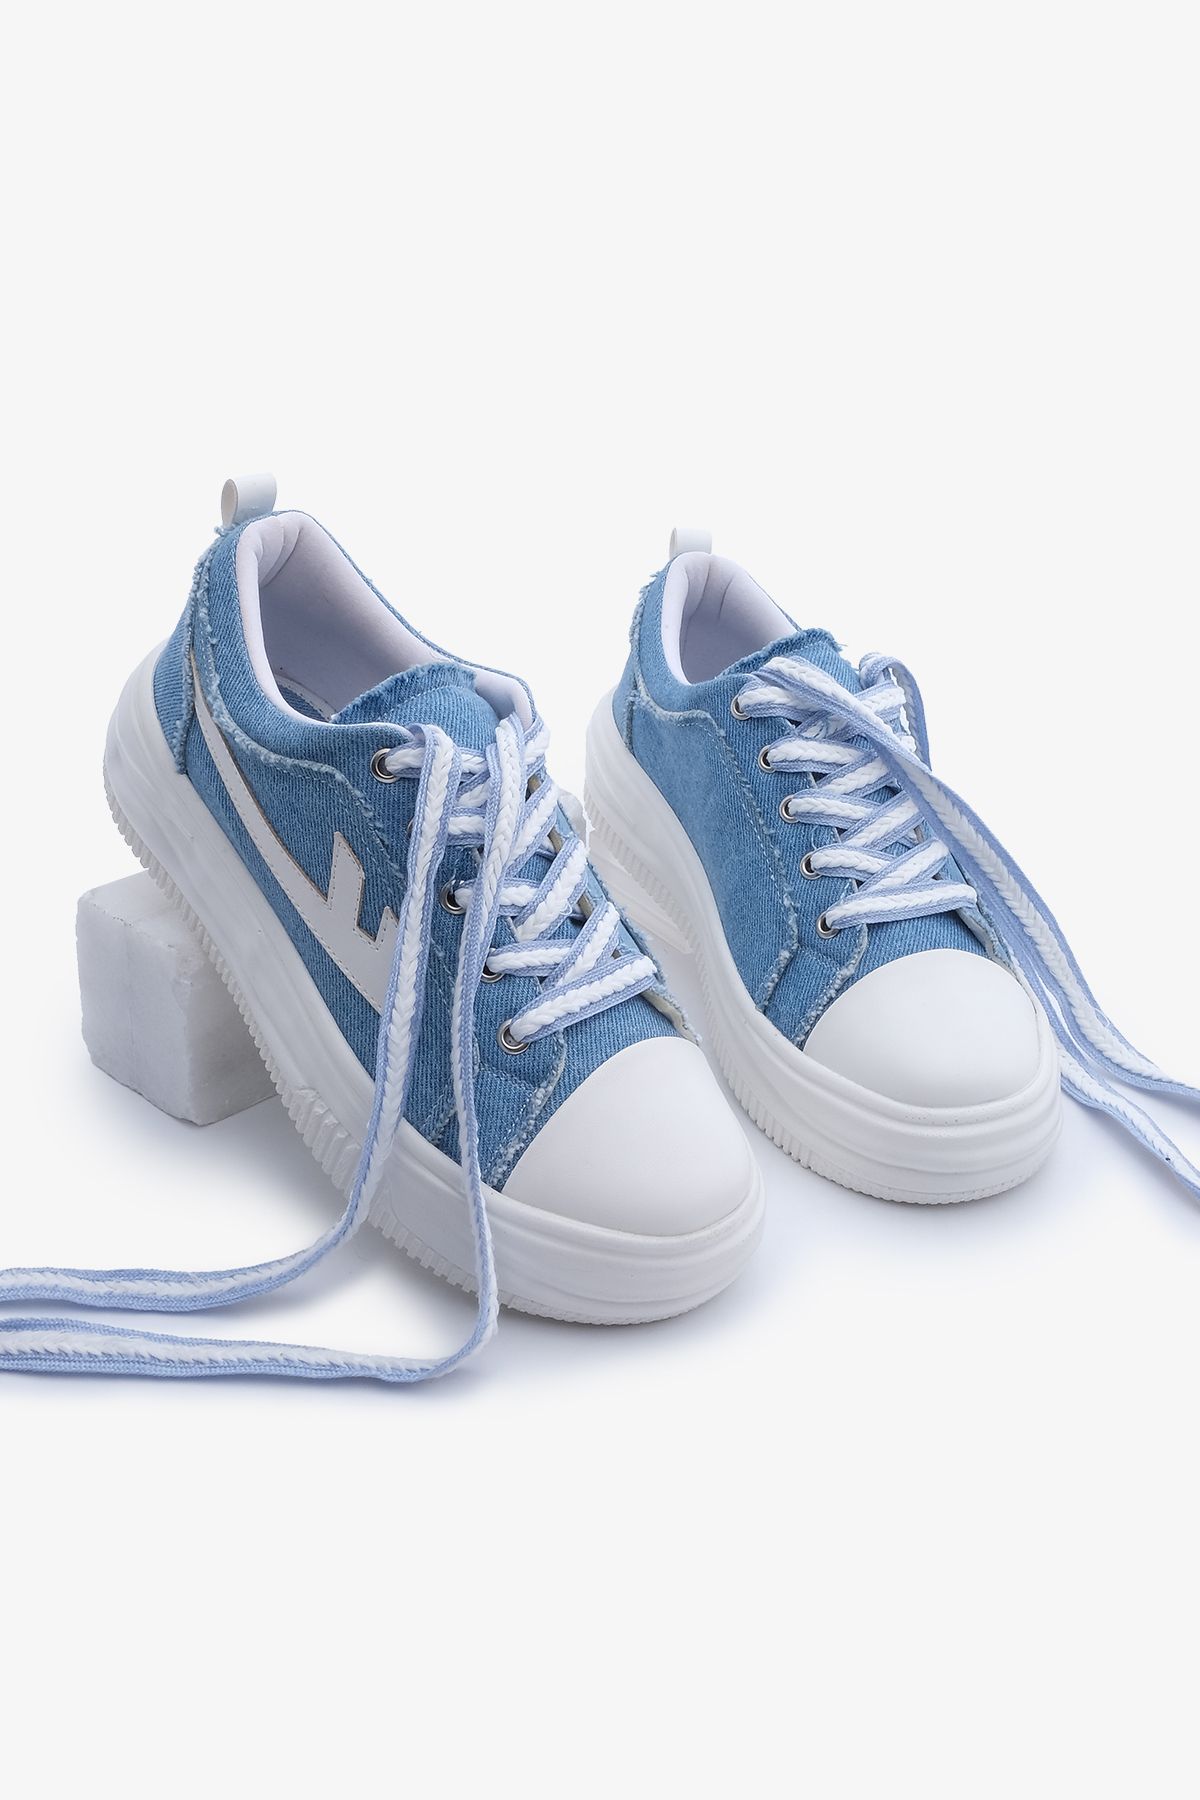 Marjin Kadın Sneaker Yüksek Taban Bağcıklı Spor Ayakkabı Arhes Mavi Kot